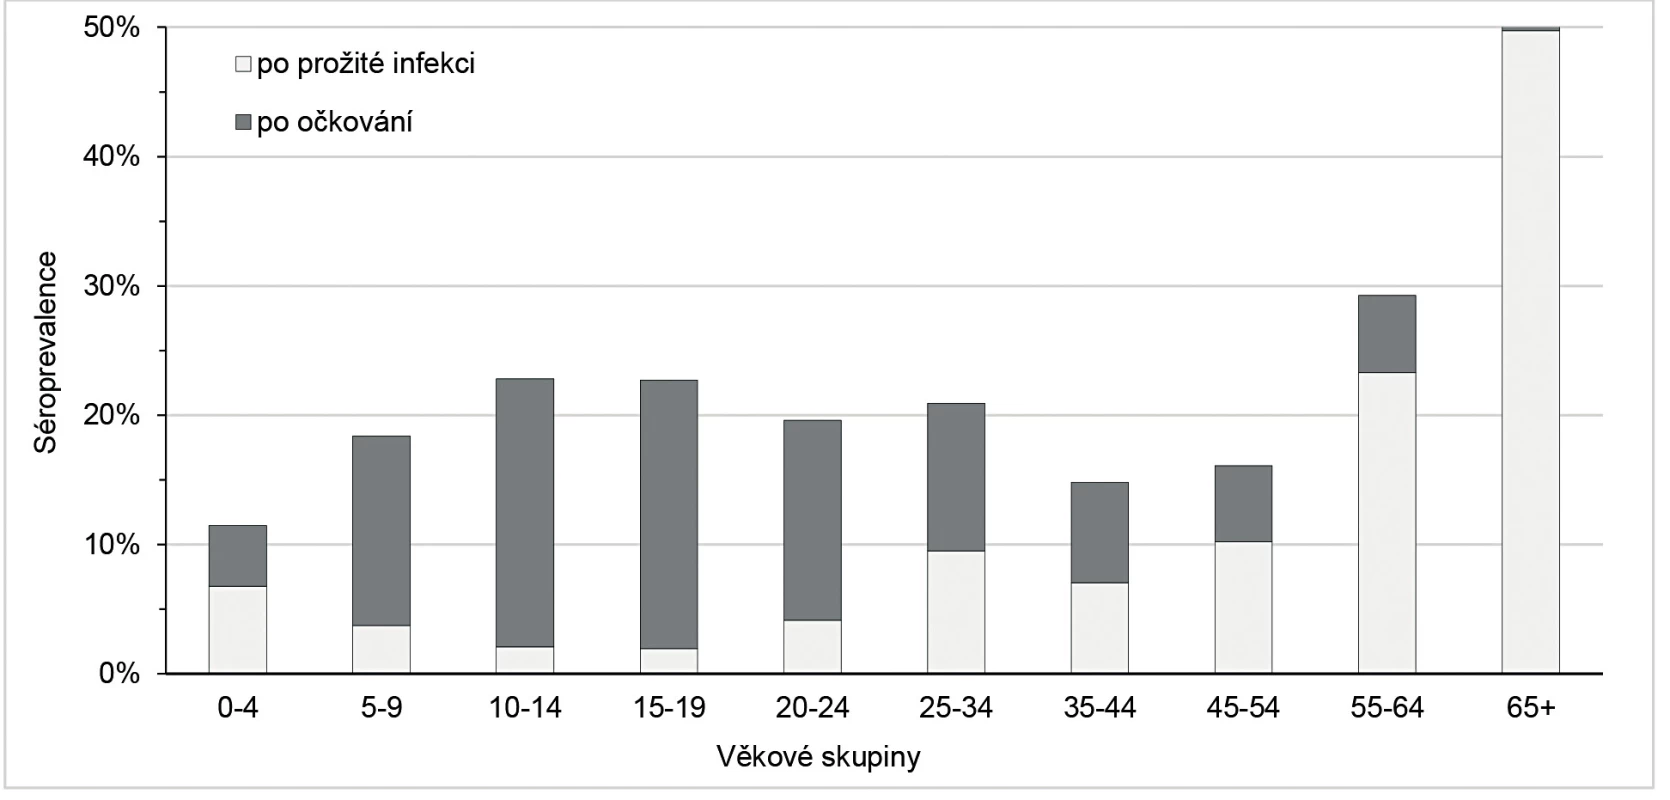 Séroprevalence (po očkování a po prožité infekci) podle věkových skupin
Figure 4. Seroprevalence (after vaccination and after infection) by age group